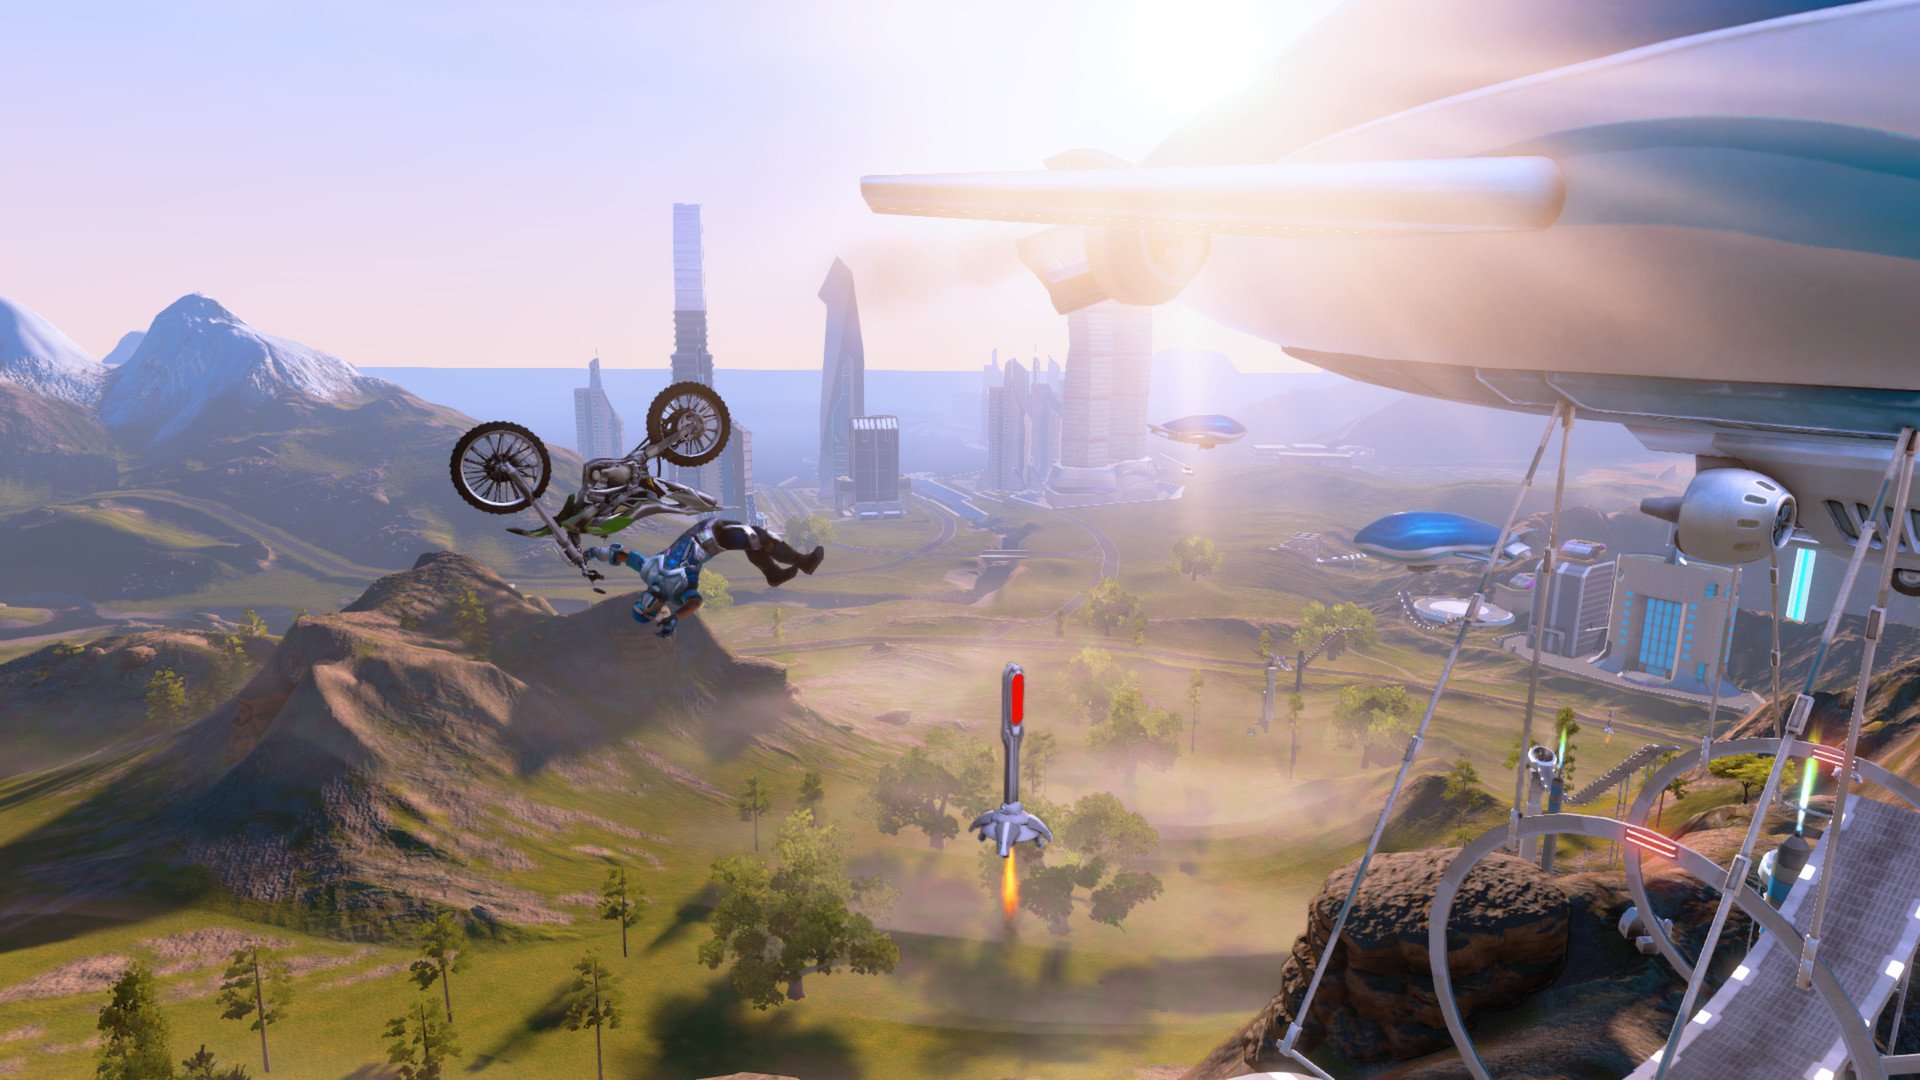 تصویری از بازی موتورسواری Trials Fusion که در آن یک موتورسوار مشغول انجام پرش است